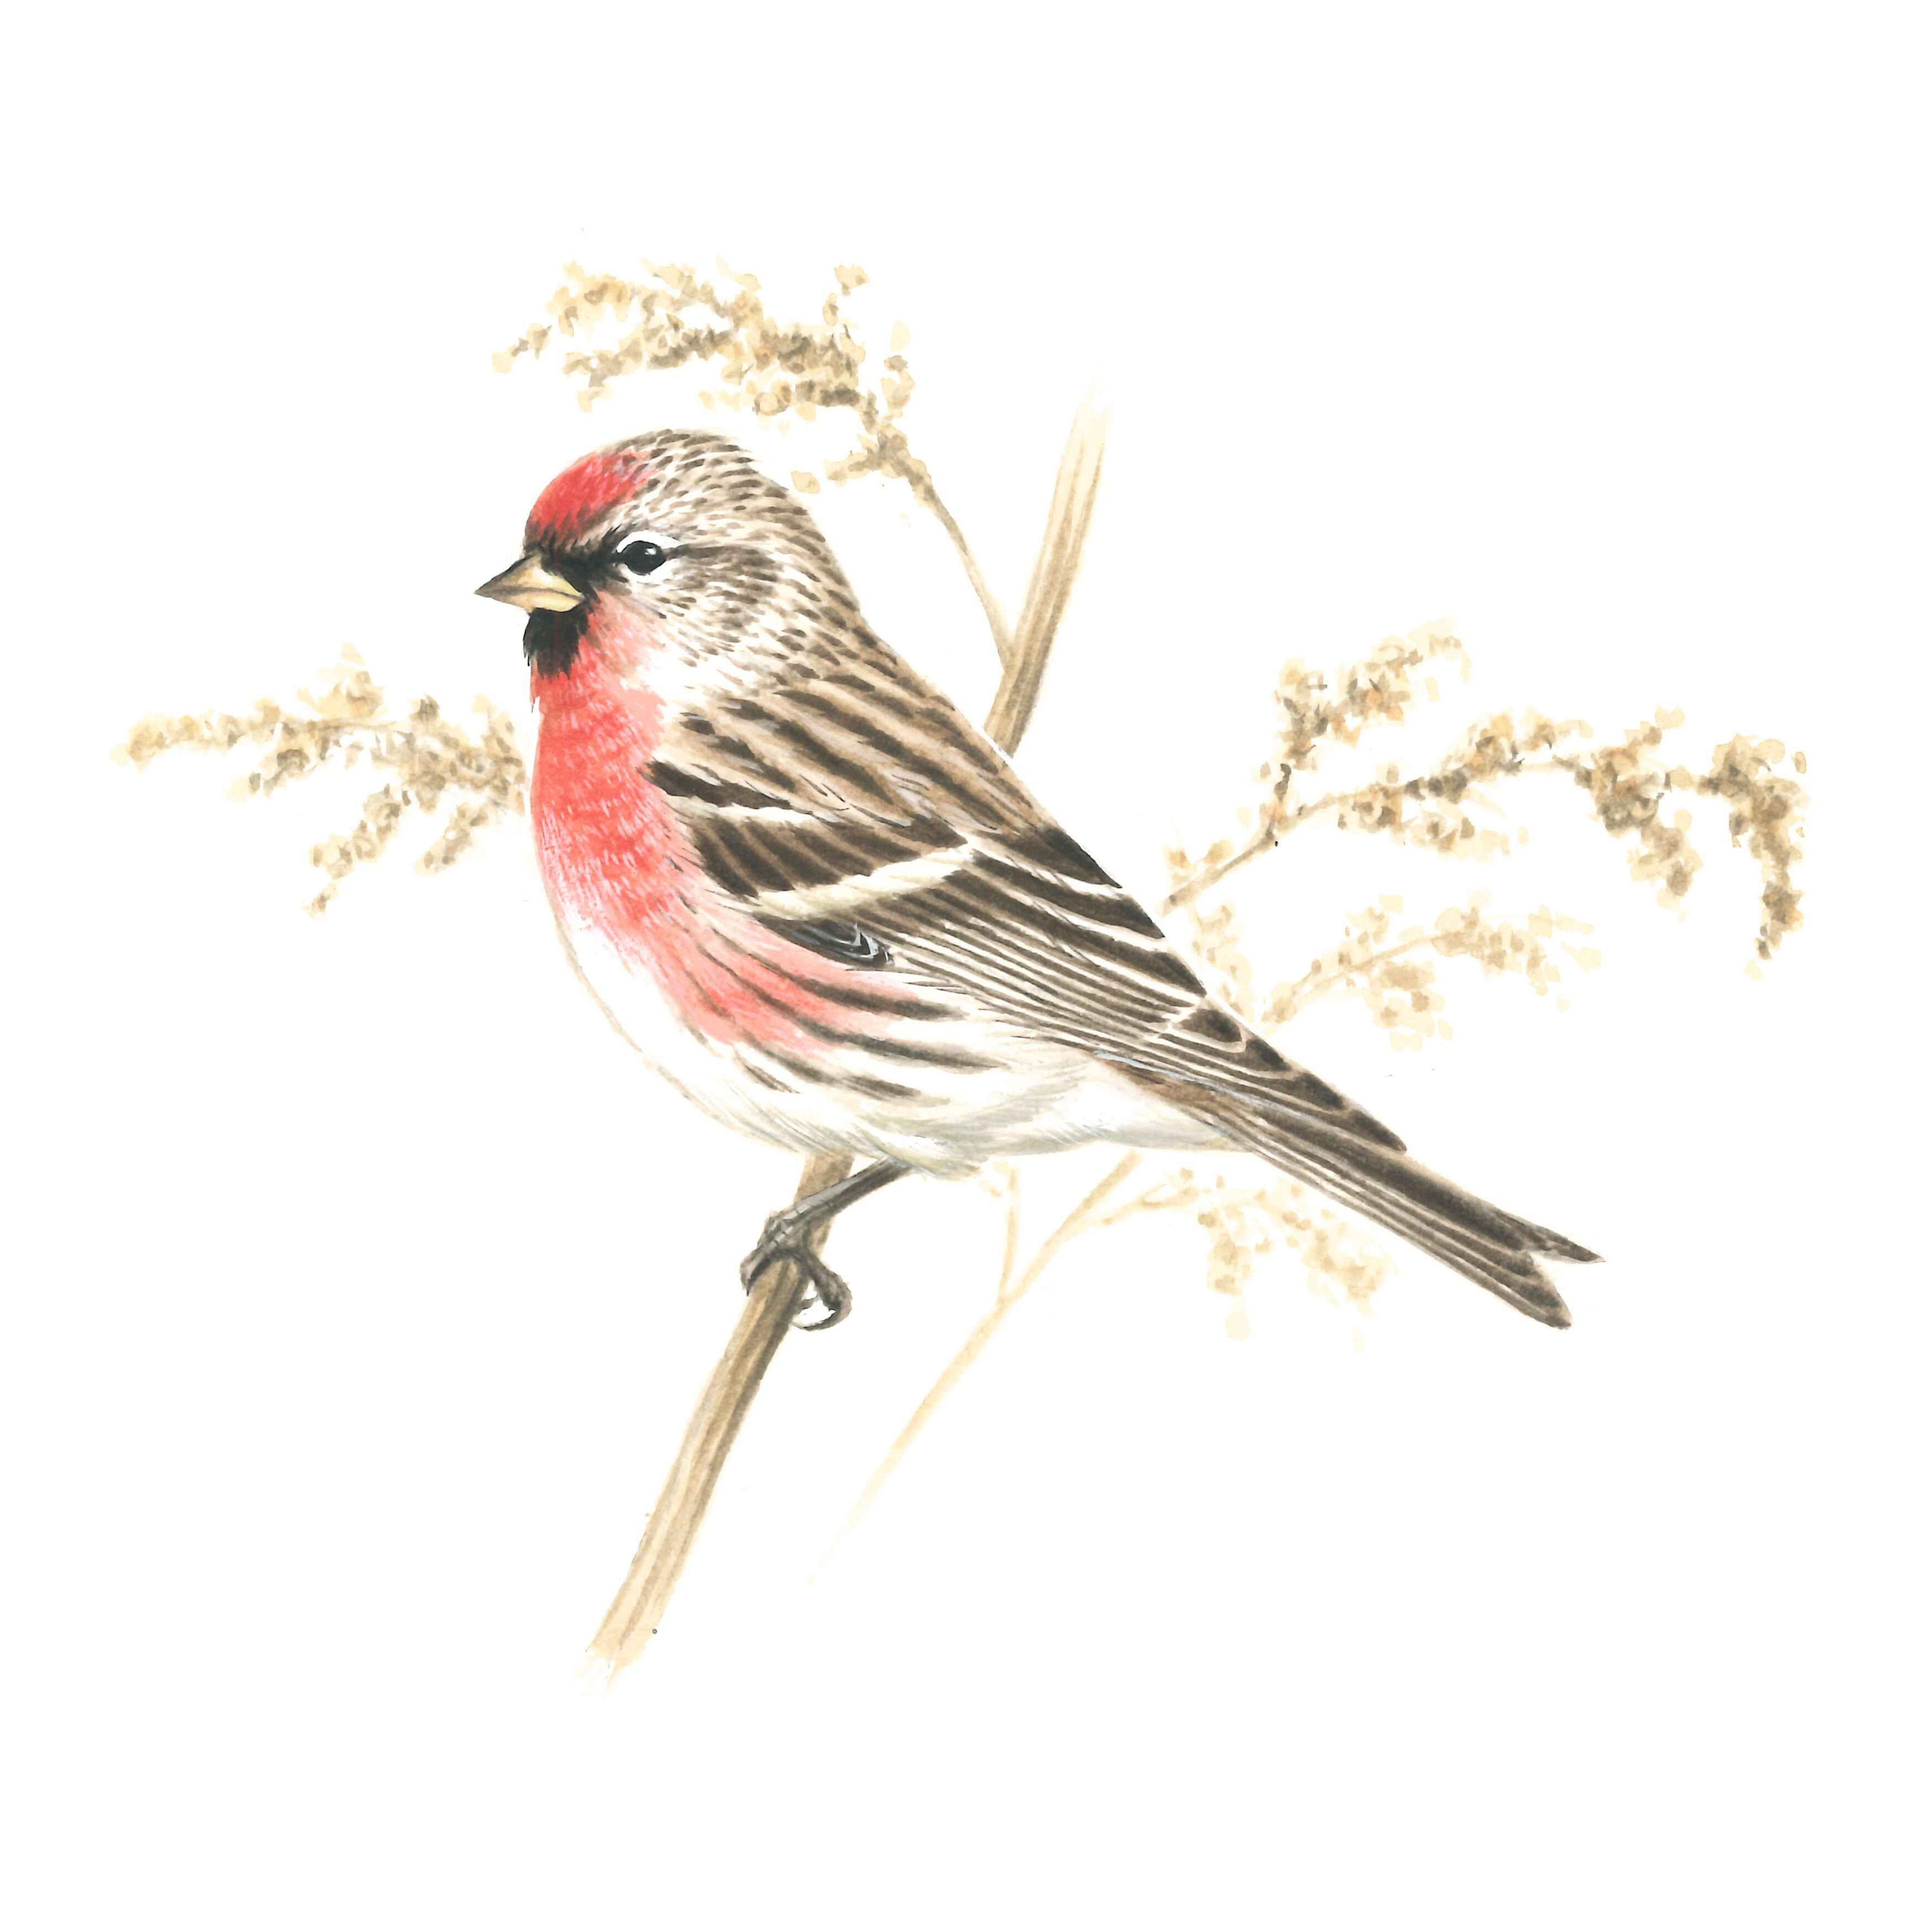 ベニヒワ 日本の鳥百科 サントリーの愛鳥活動